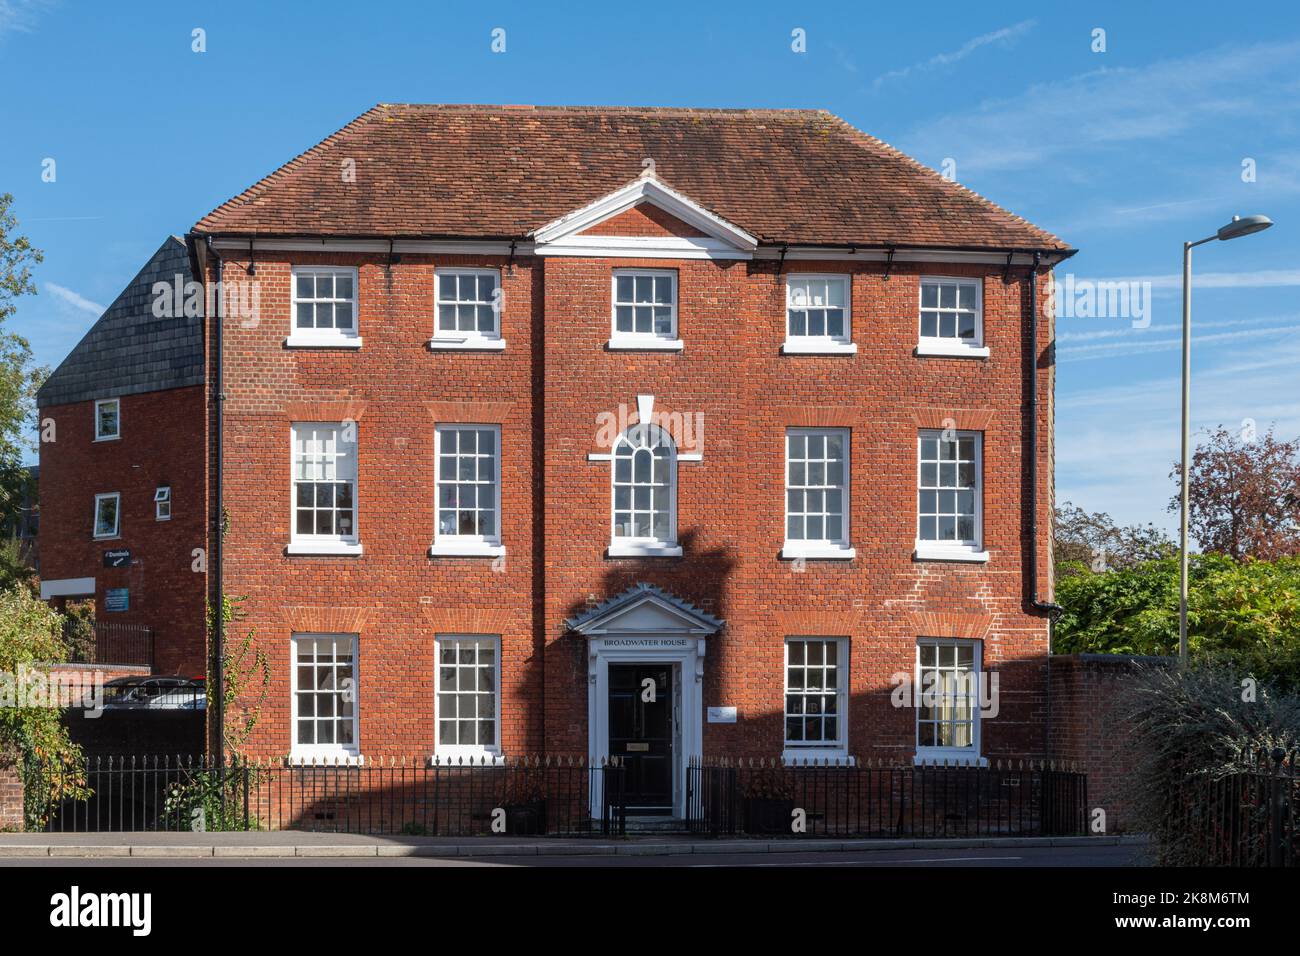 Broadwater House à Romsey, Hampshire, Angleterre, Royaume-Uni, un bâtiment classé II* Banque D'Images